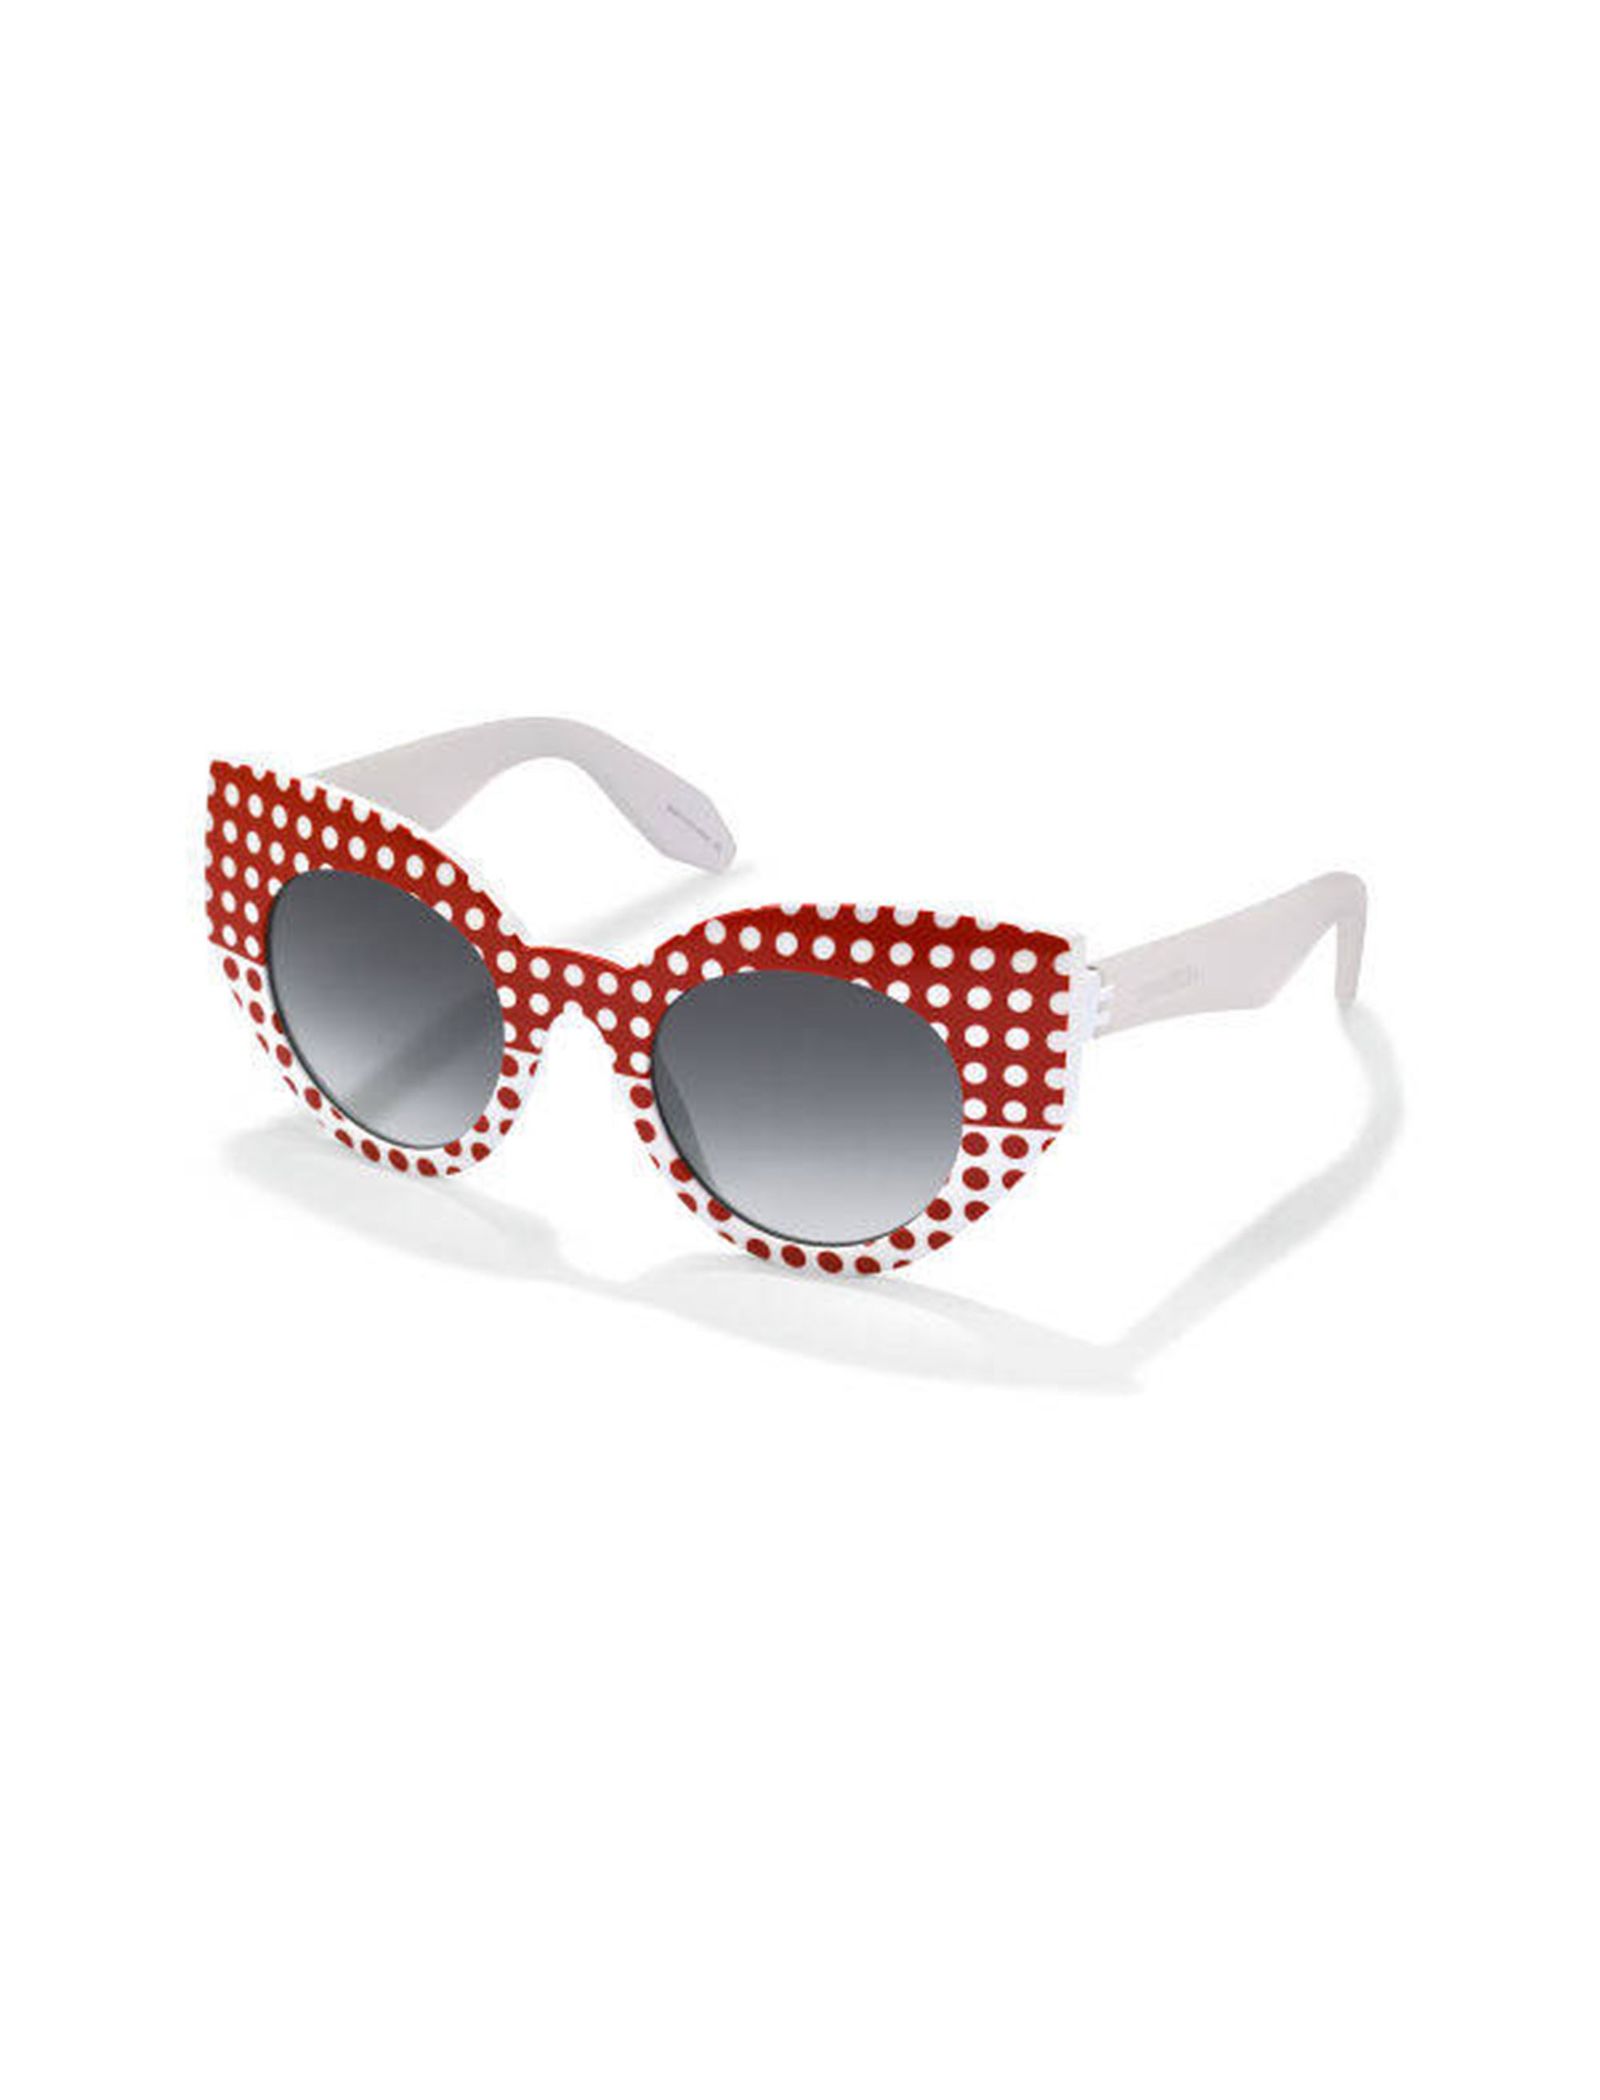 عینک آفتابی گربه ای زنانه - سواچ - سفيد و قرمز - 3